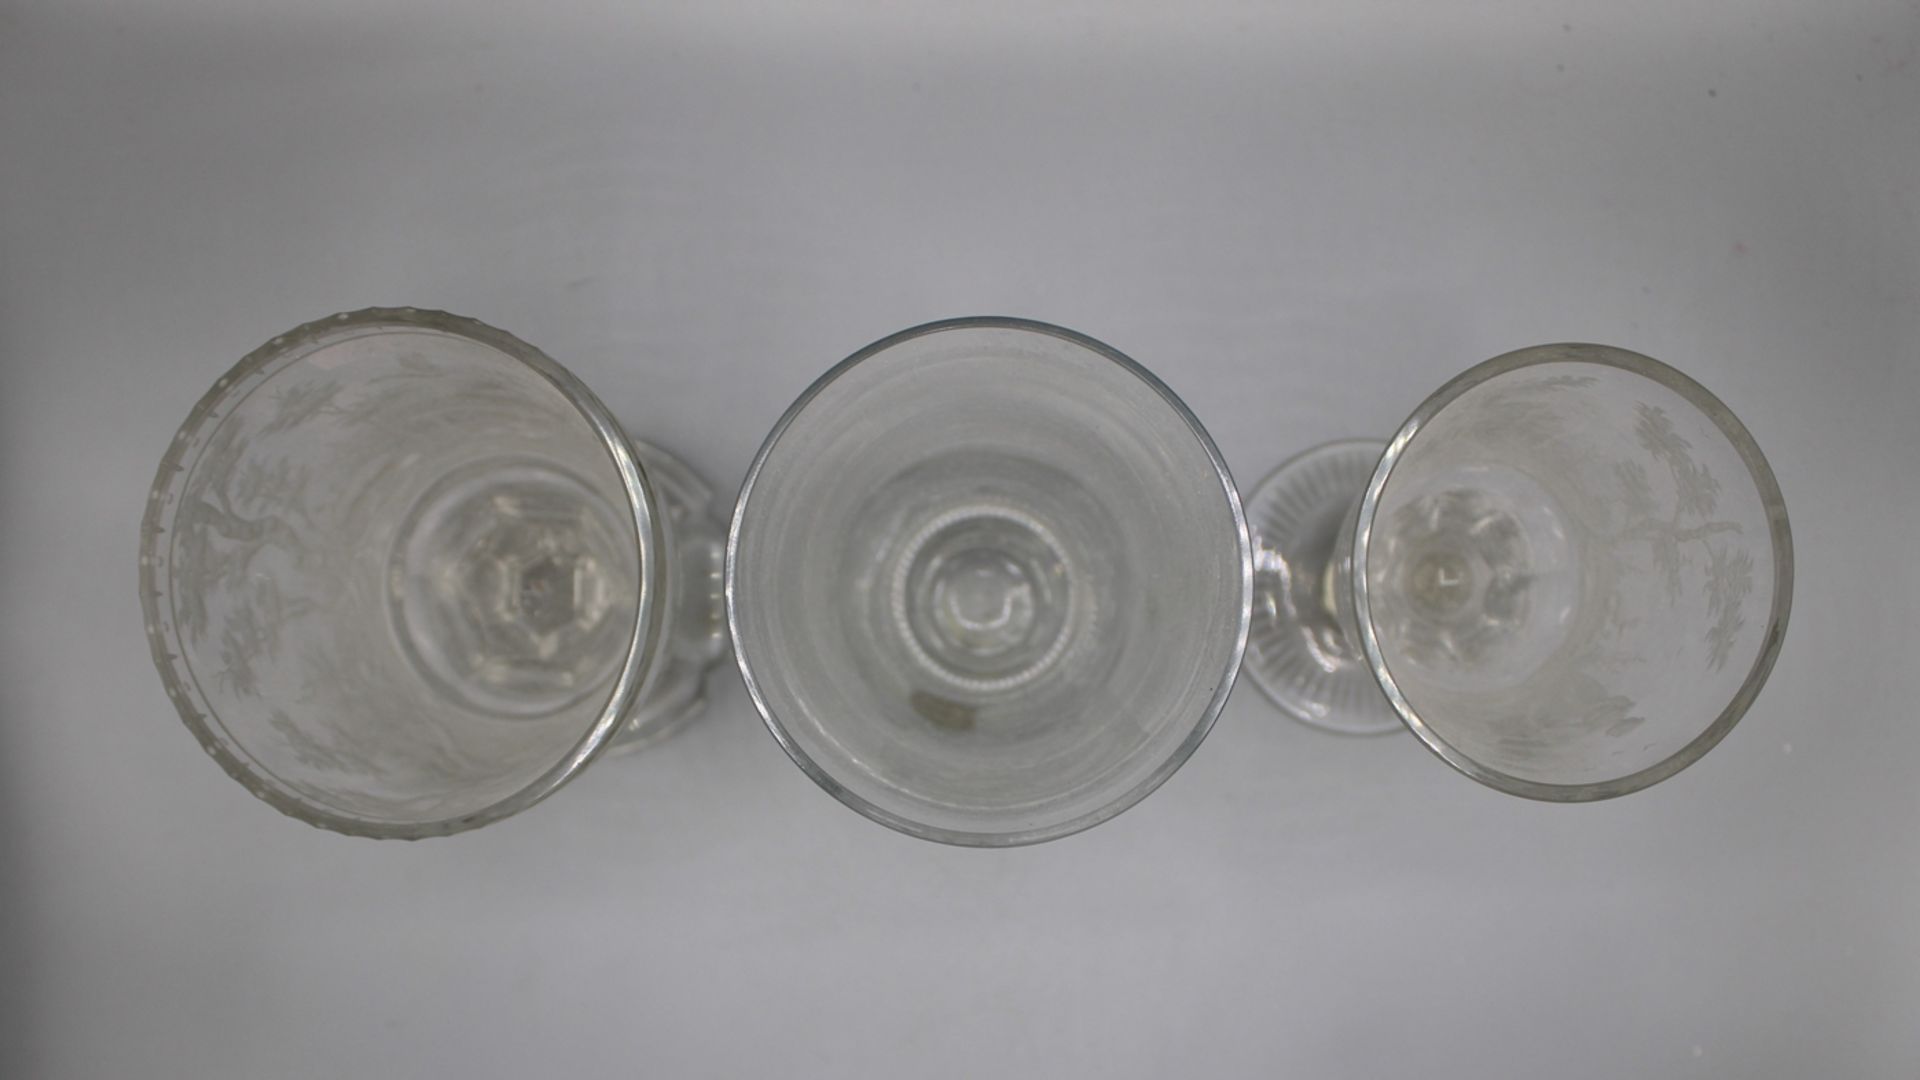 3 Gläser bez. ERZ-Kristall qualitätvoller Glasschnitt 20 Jh., sehr aufwändig mit Tiefschnitt gravie - Image 2 of 2